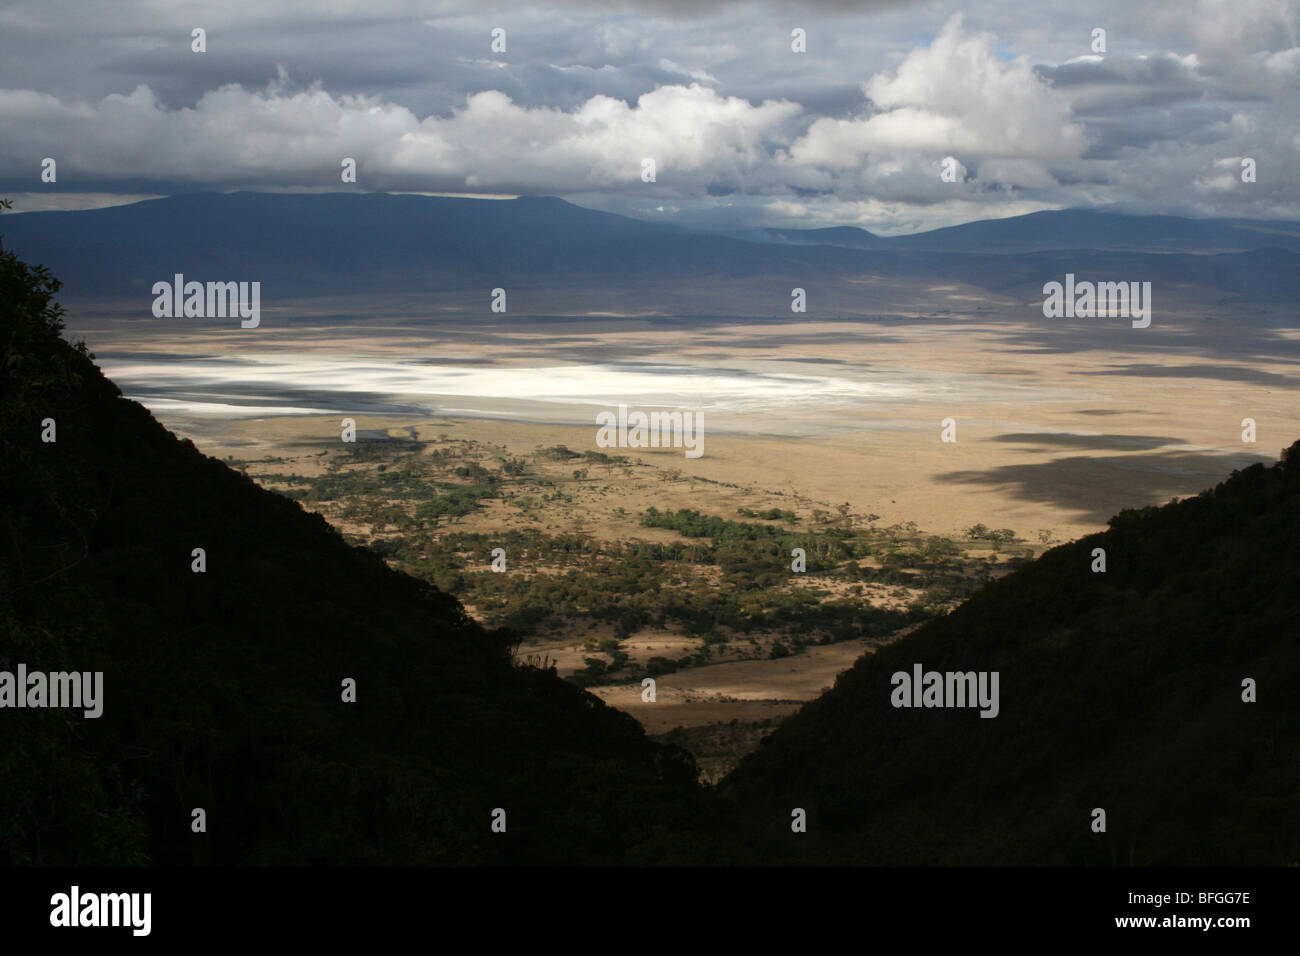 The Collapsed Volcanic Caldera Of Ngorongoro Crater, Tanzania Stock Photo